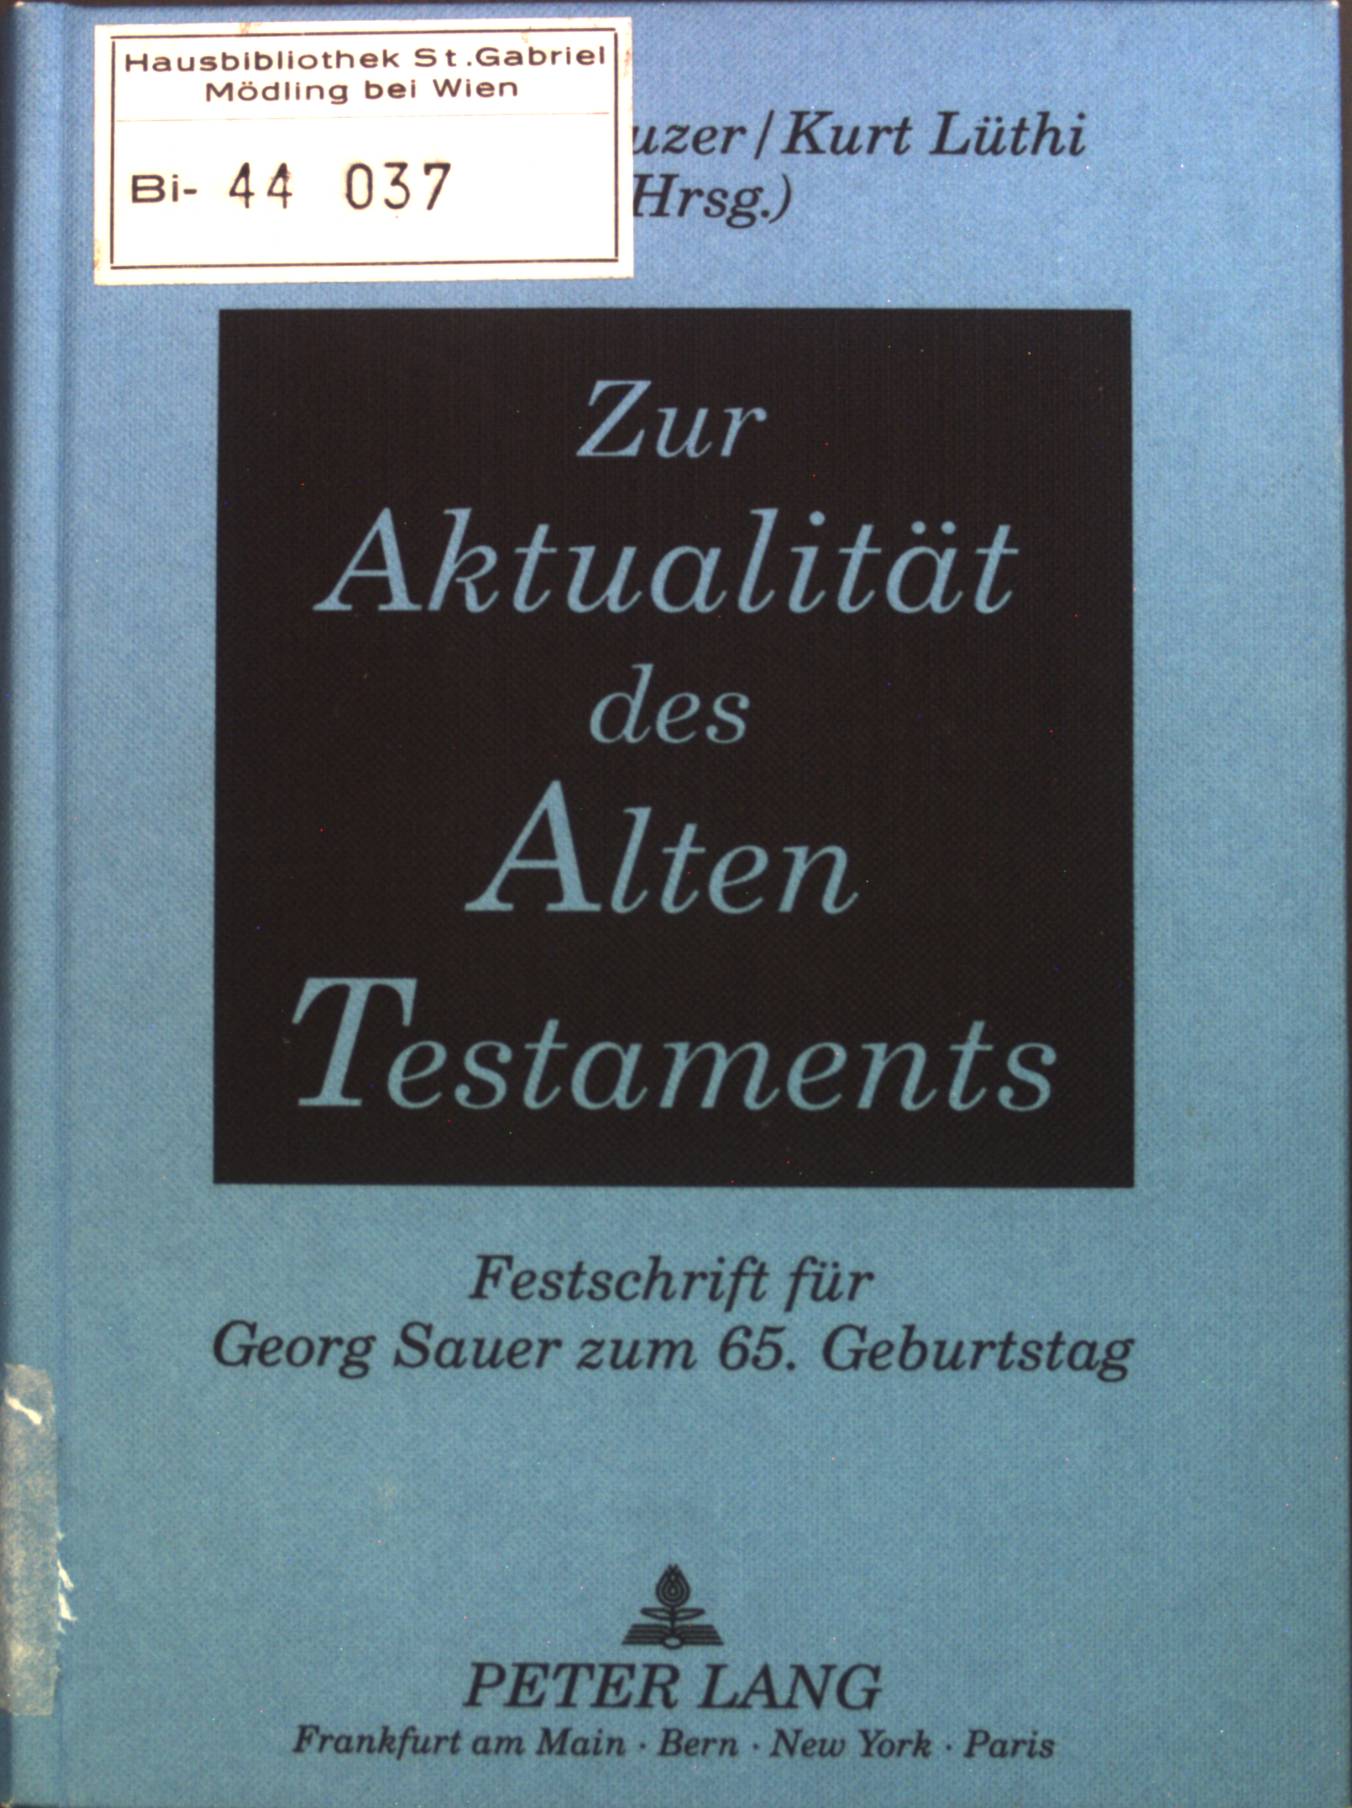 Zur Aktualität des Alten Testaments : Festschrift für Georg Sauer zum 65. Geburtstag. - Kreuzer, Siegfried und Georg Sauer